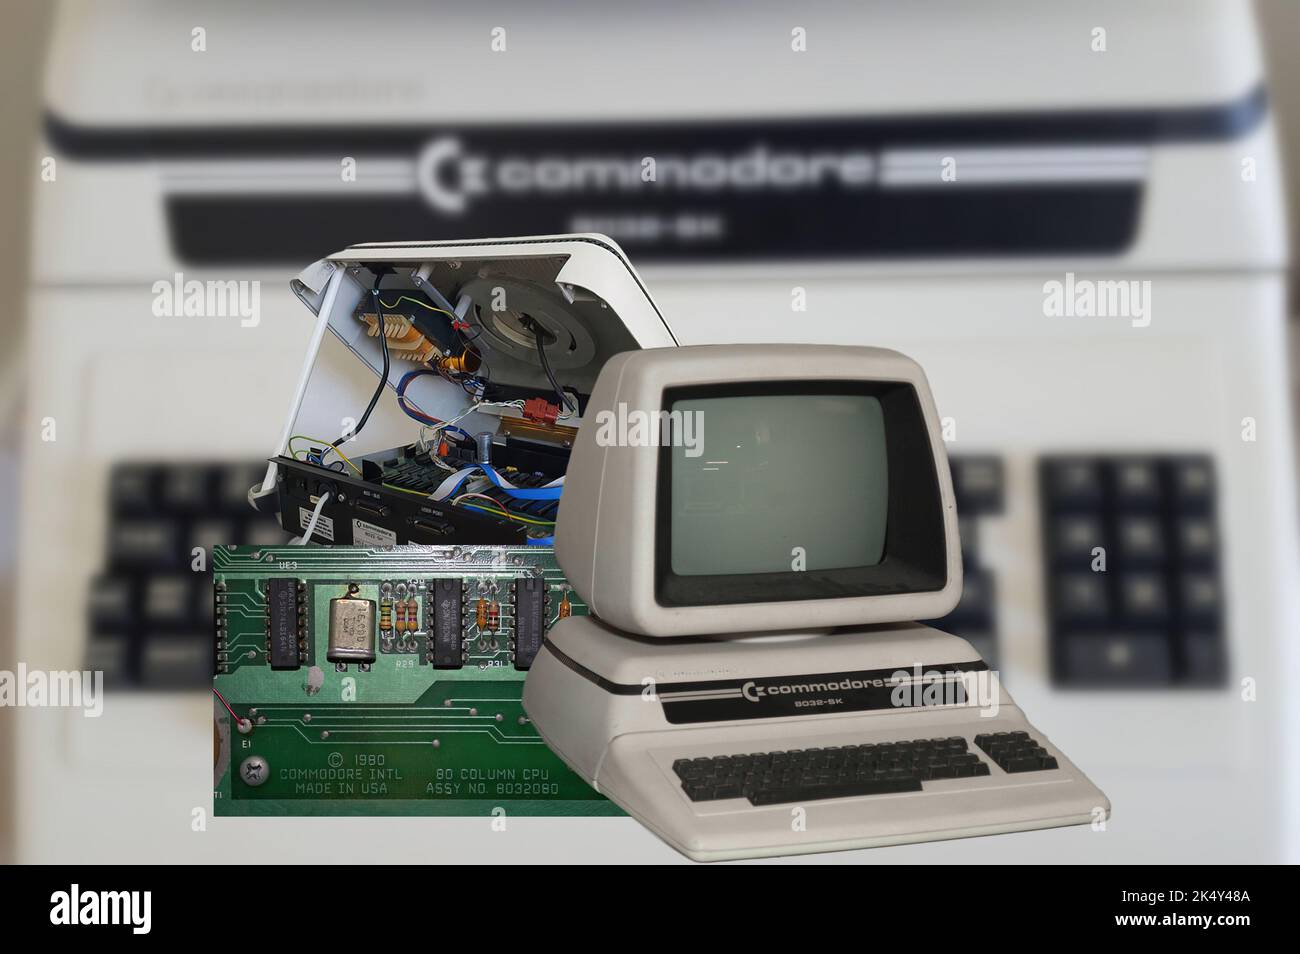 Commodore 8032 Stock Photo